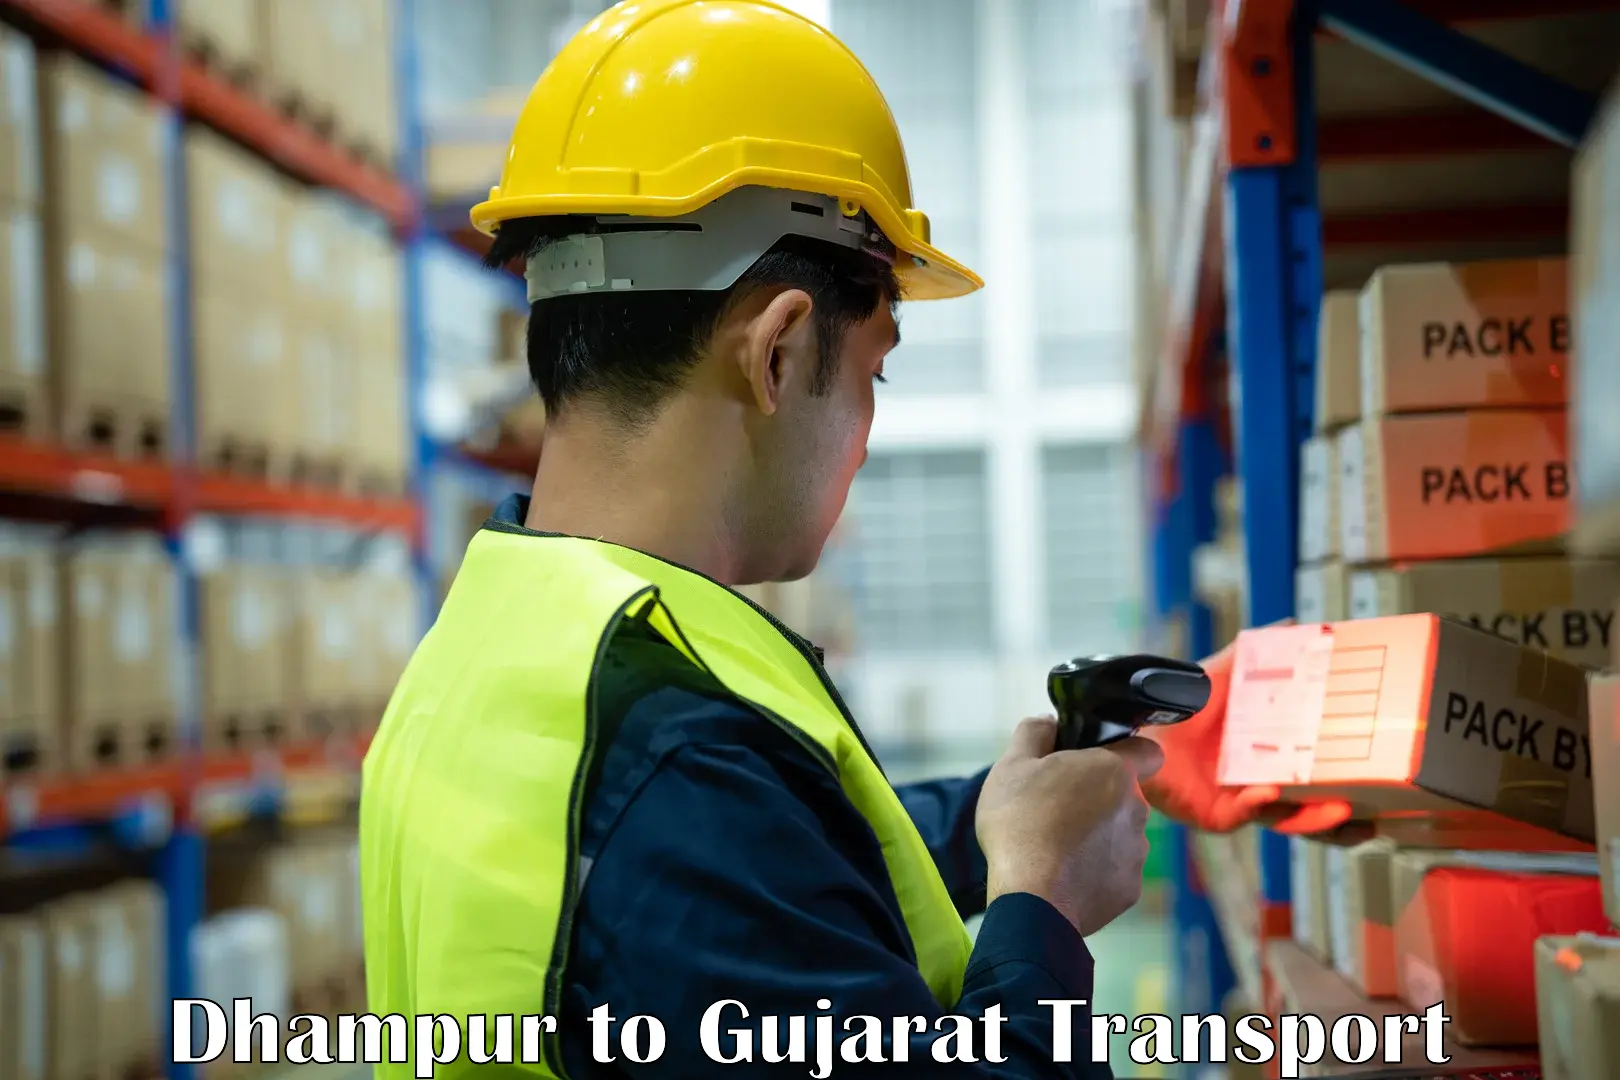 Shipping partner Dhampur to Matar